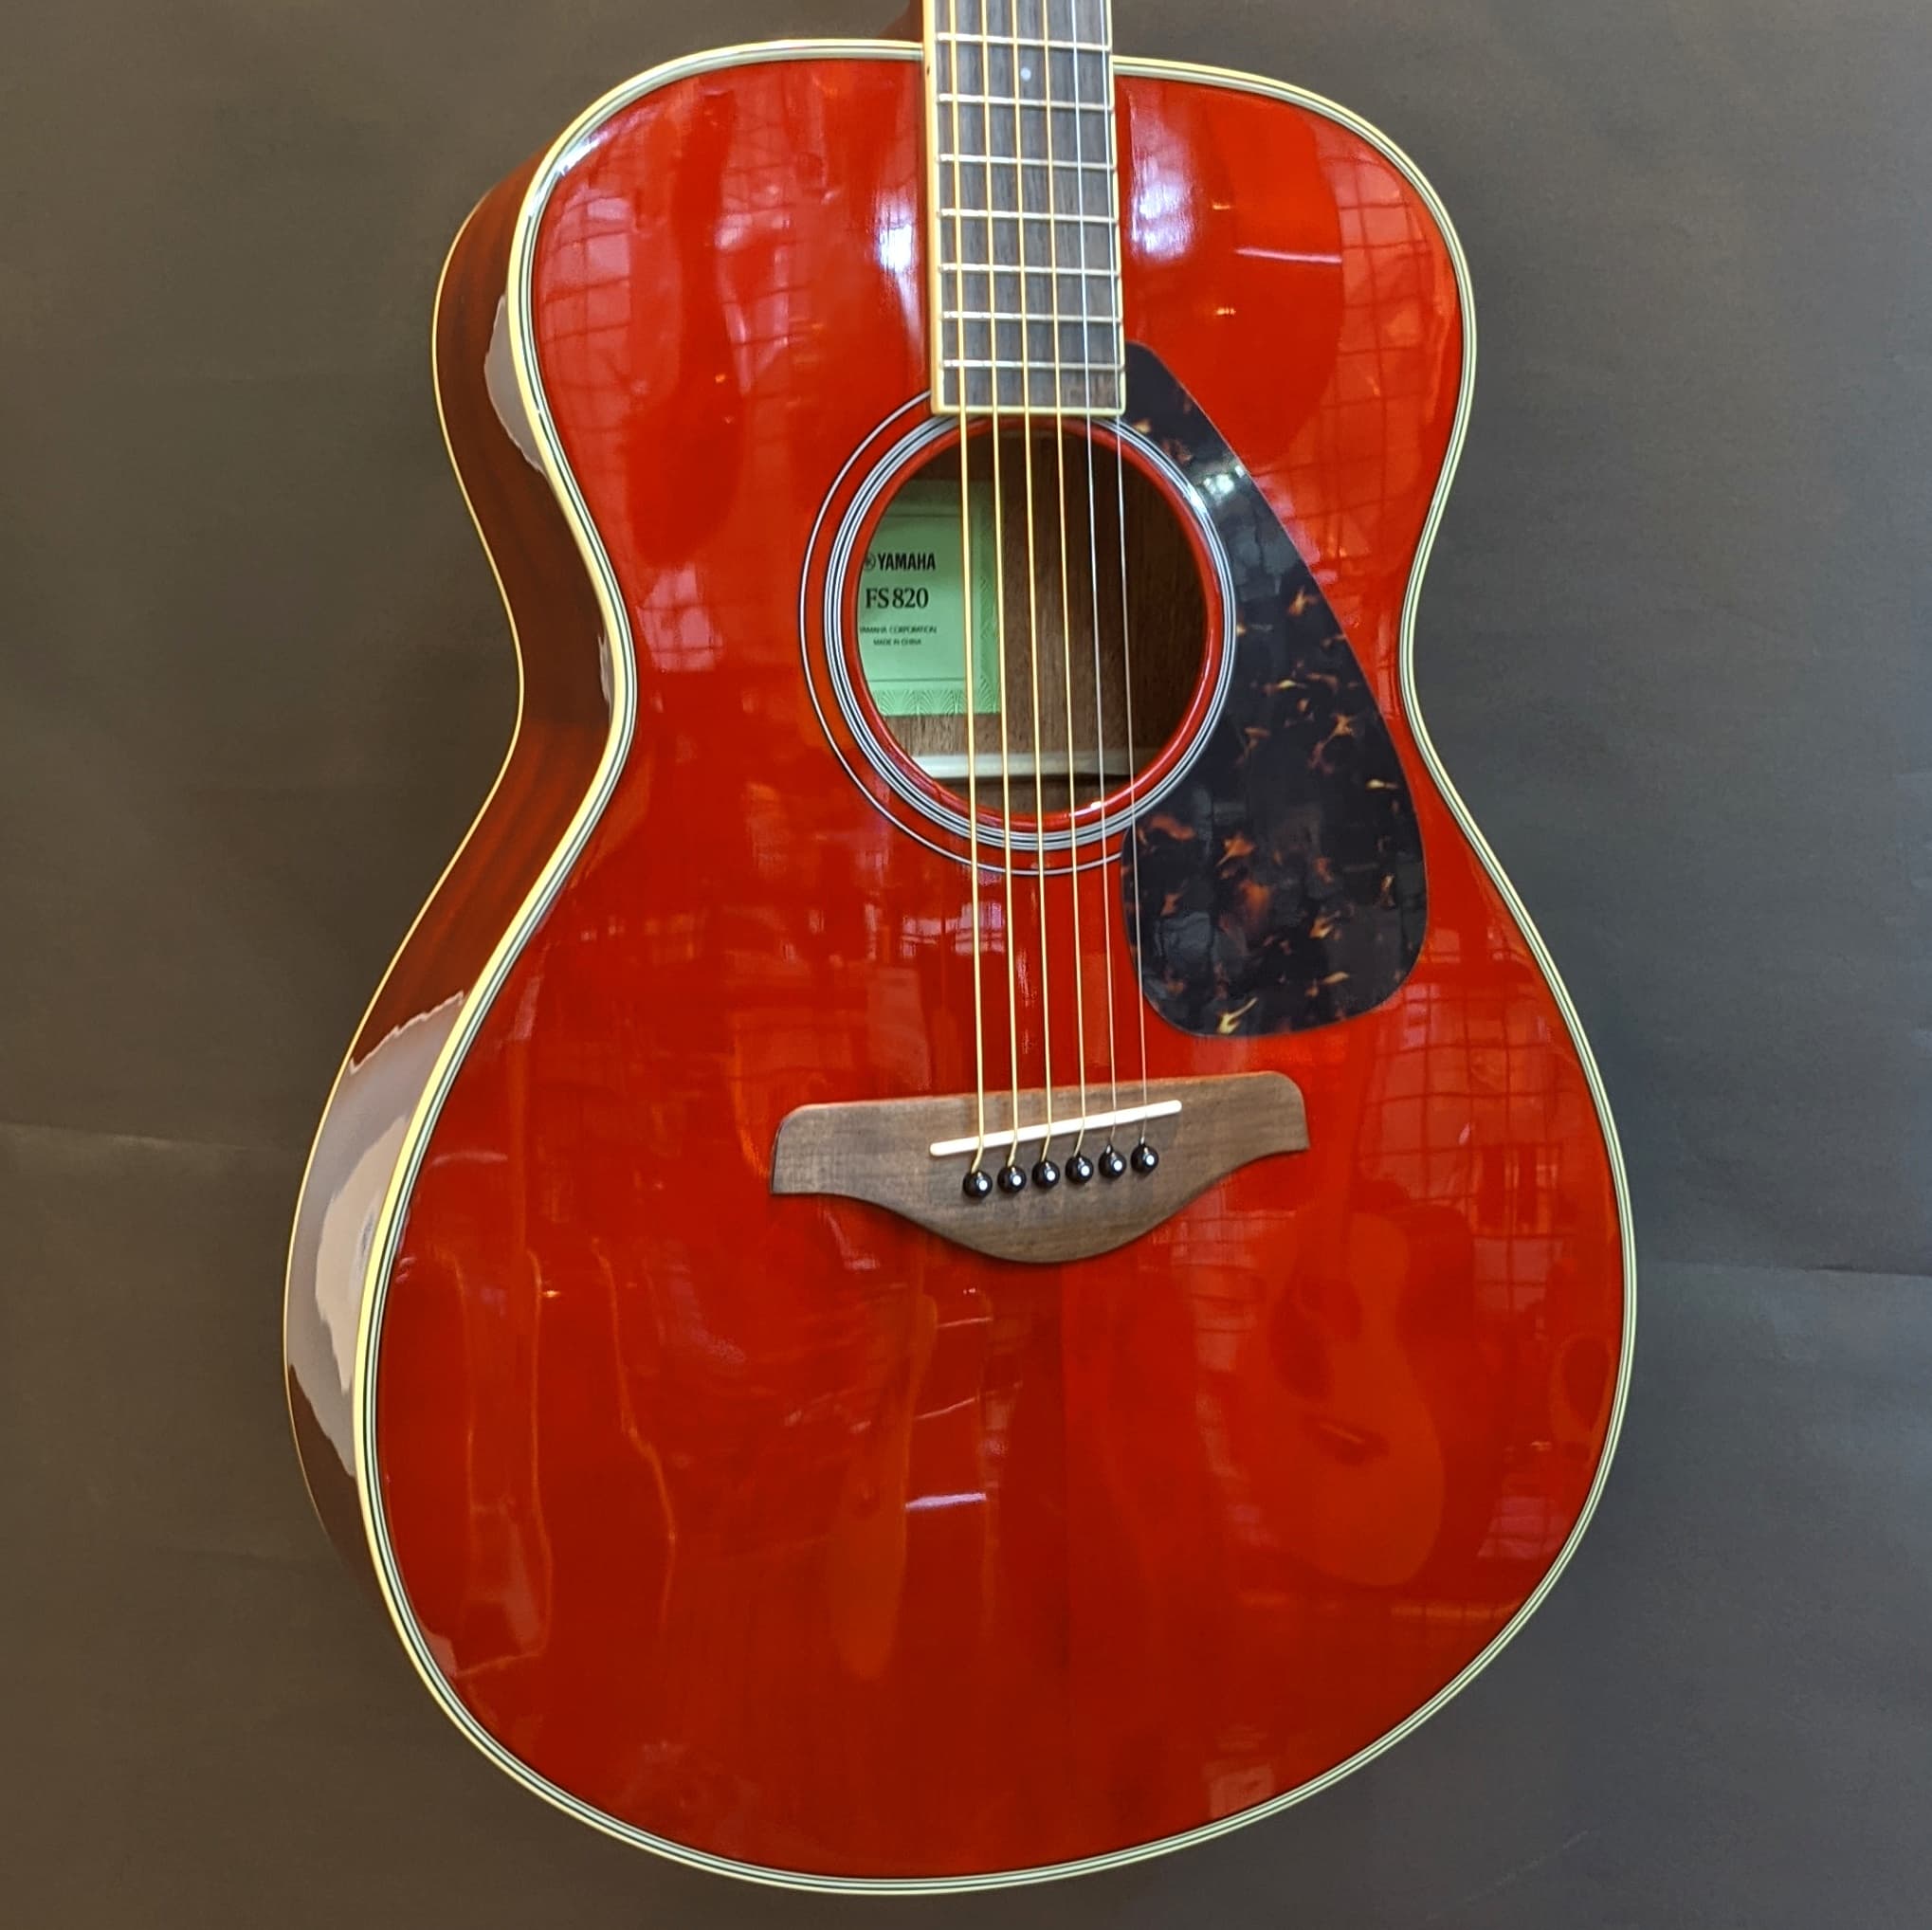 ヤマハ アコースティックギター FS820 RR ルビーレッド